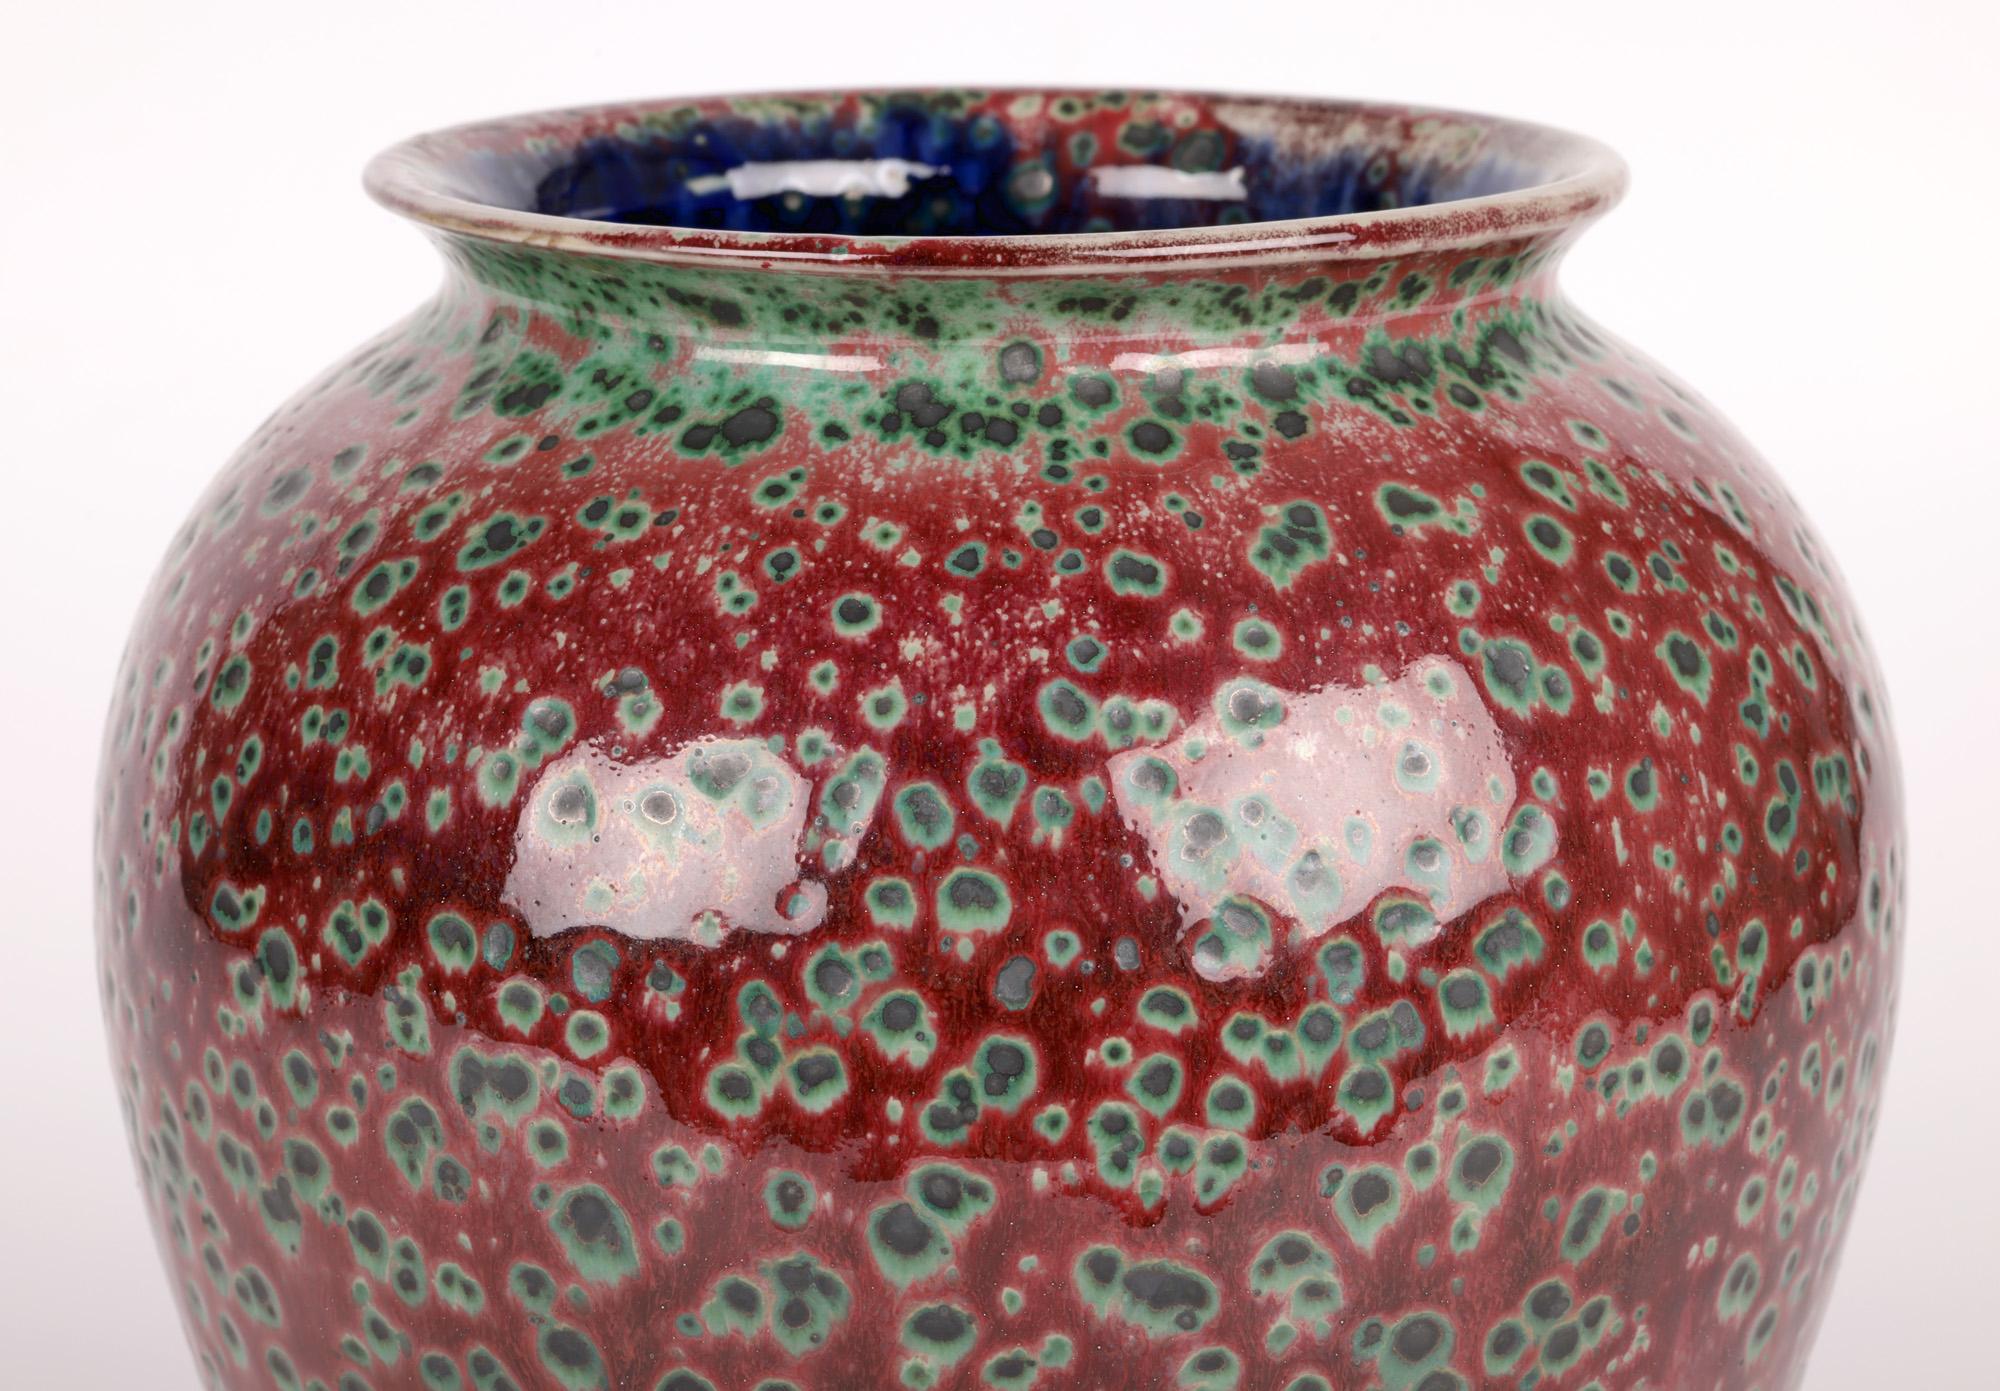 Un vase exceptionnel, impressionnant et unique de Cobridge pottery ruskin glazed par Anita Harris et glacé par Justin Emery et datant d'environ 2000. Le grand vase bulbeux en grès repose sur une base ronde à jupe, avec un corps rond qui s'élargit et